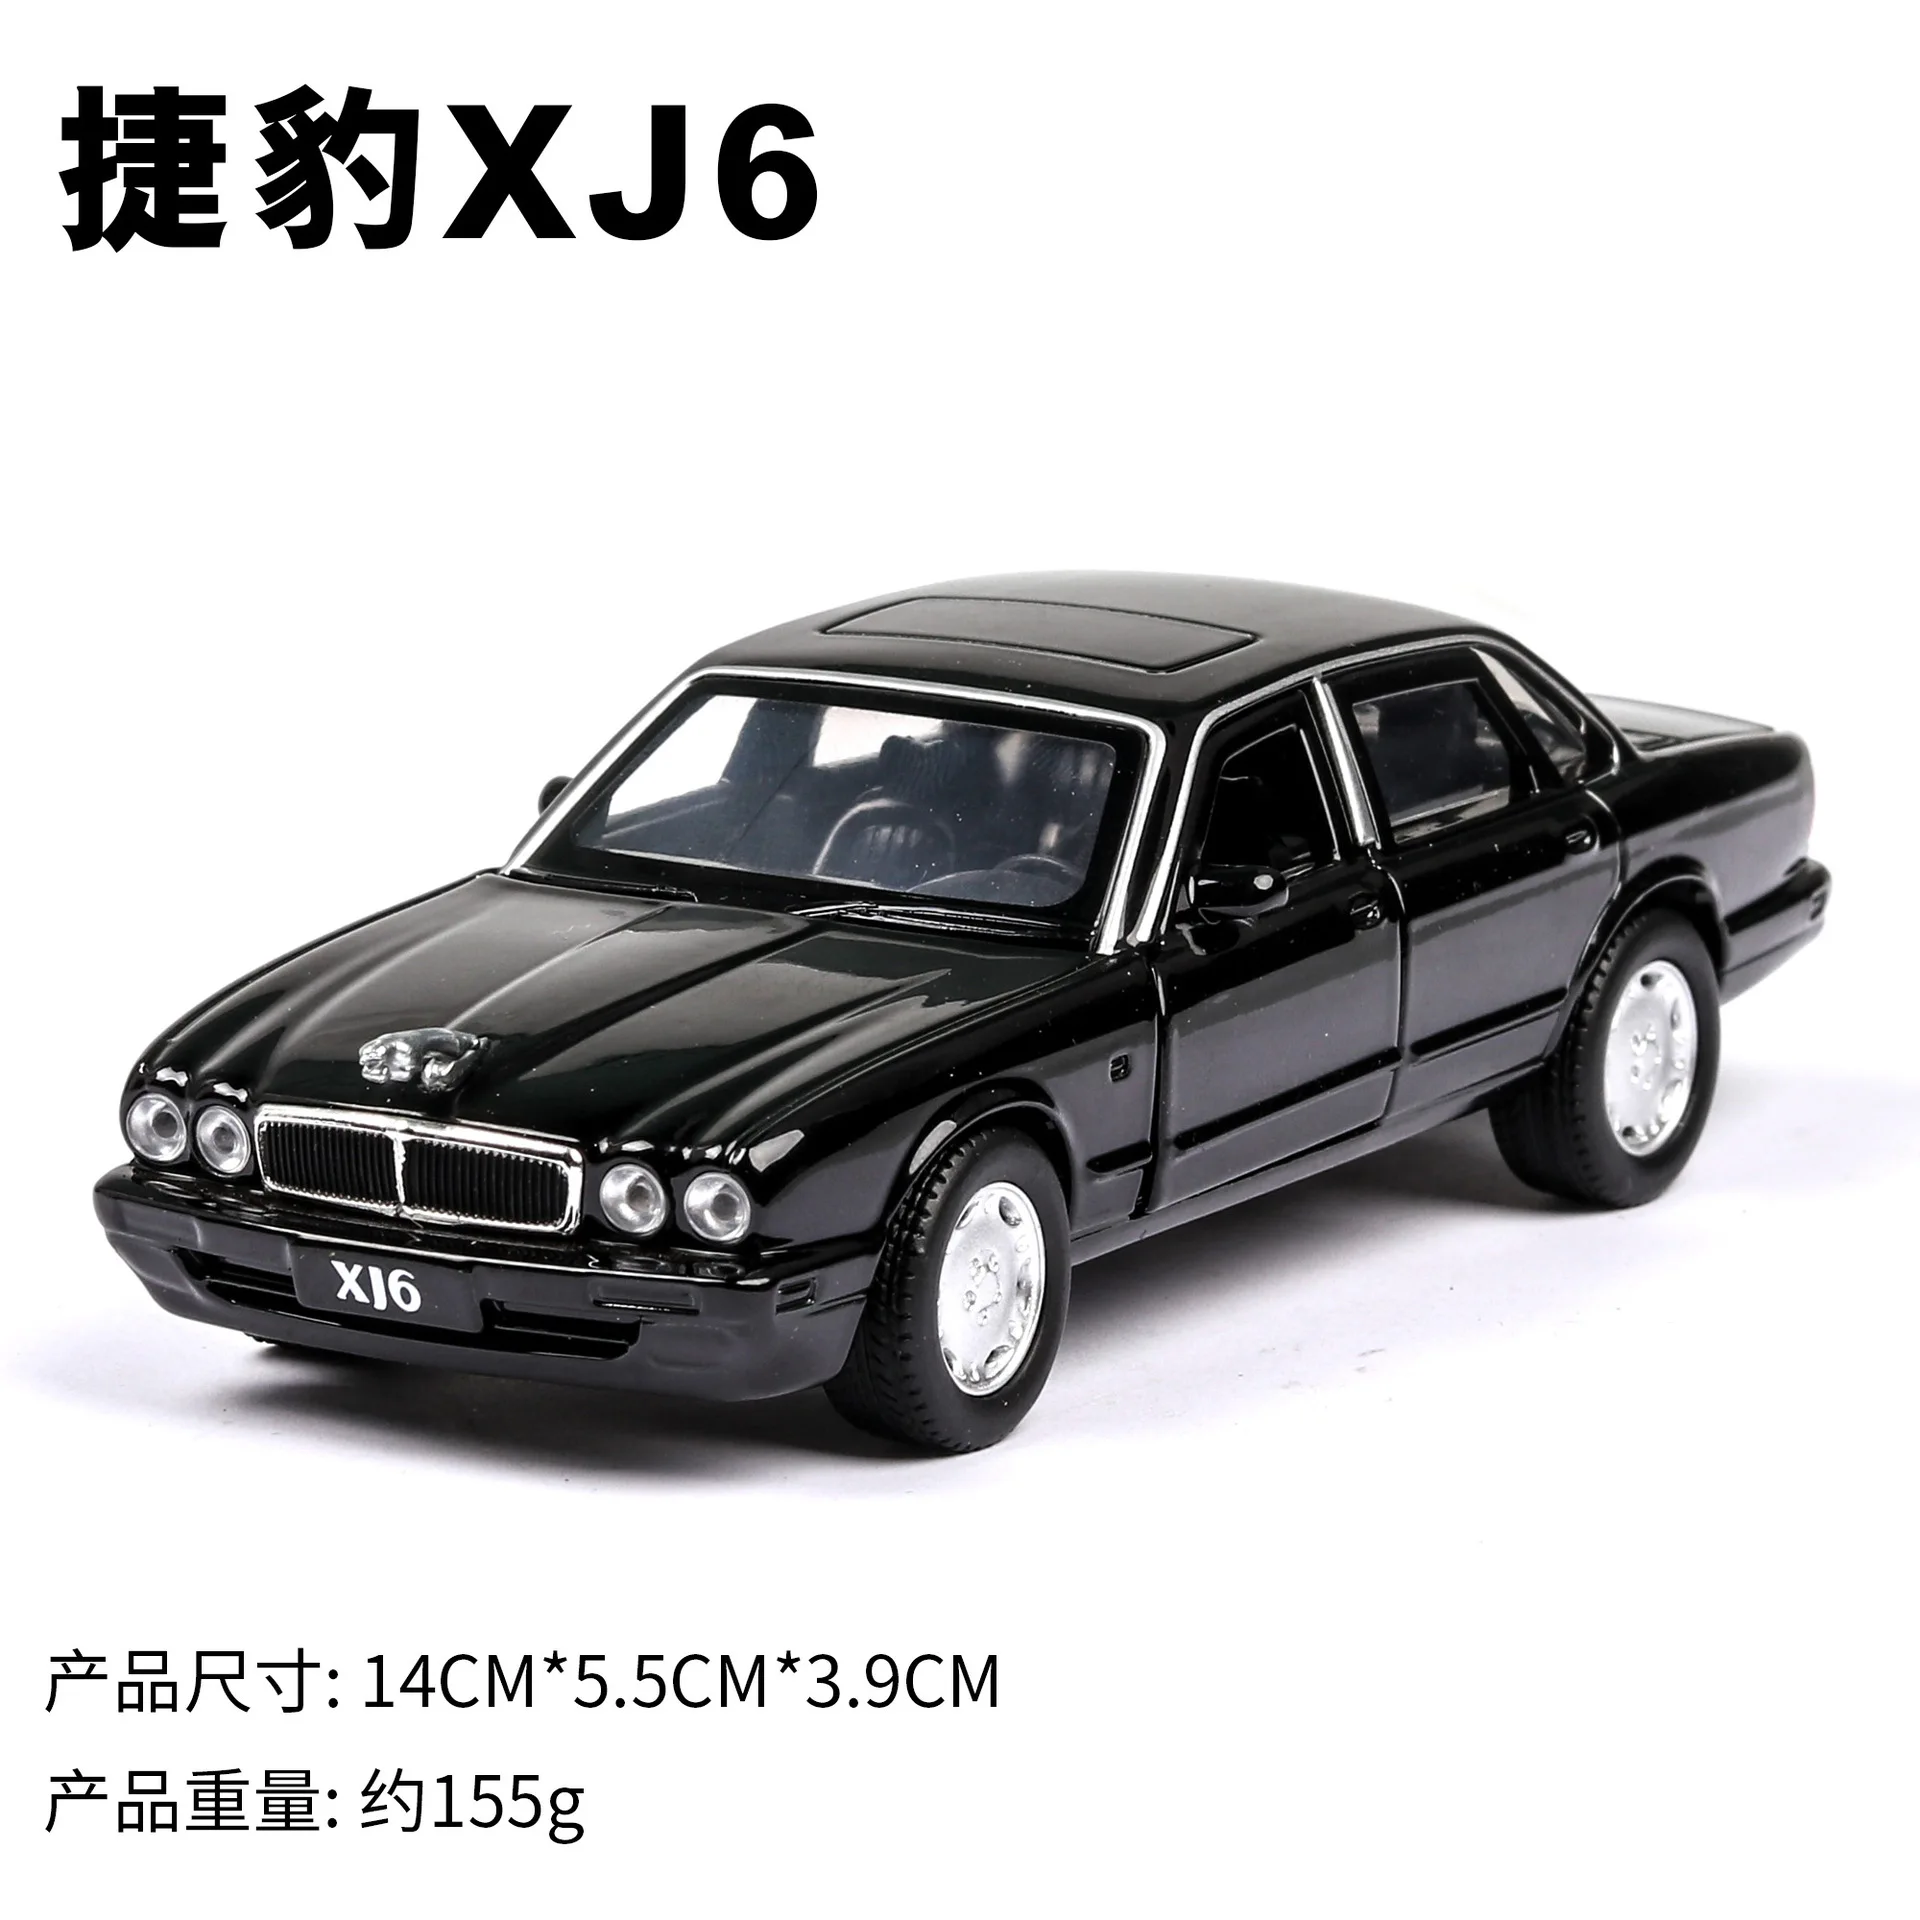 1:36 высокое моделирование Jaguar xj6 классический сплав модель машины игрушки для детей Подарки - Цвет: MJ8651905B no box